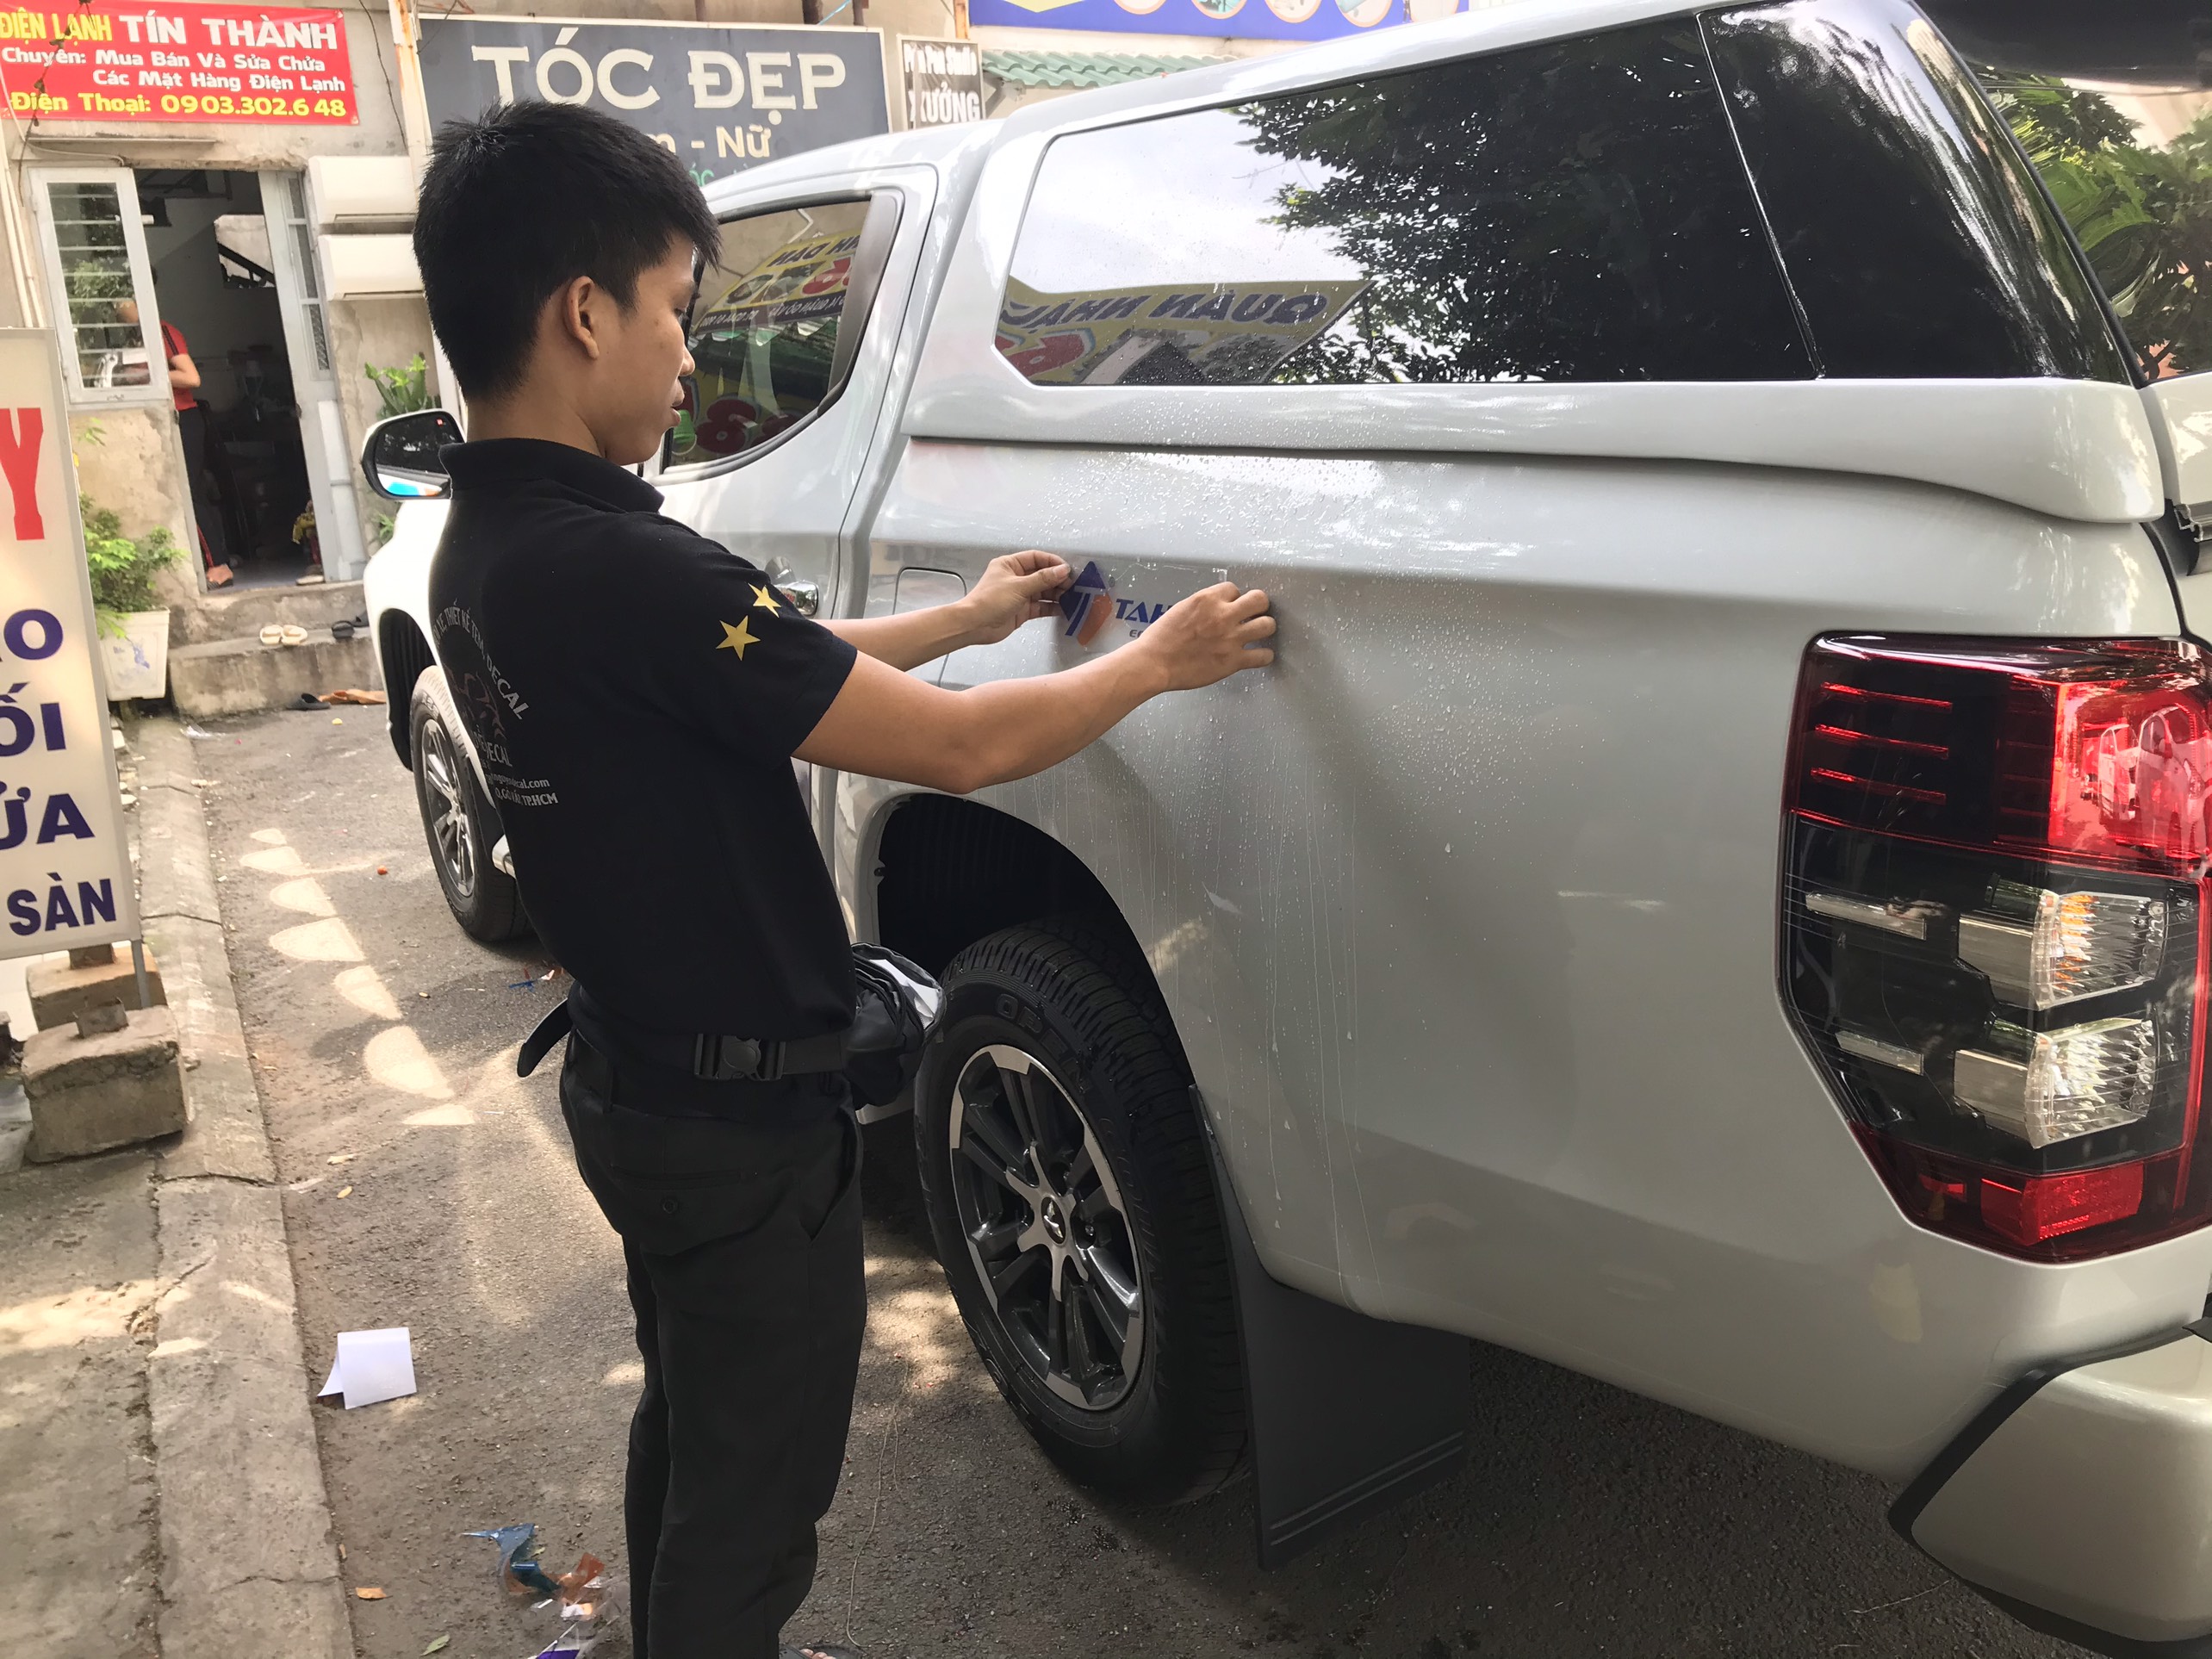 Dán decal quảng cáo thương hiệu công ty cho xe ô tô - Nguyễn Decal ...